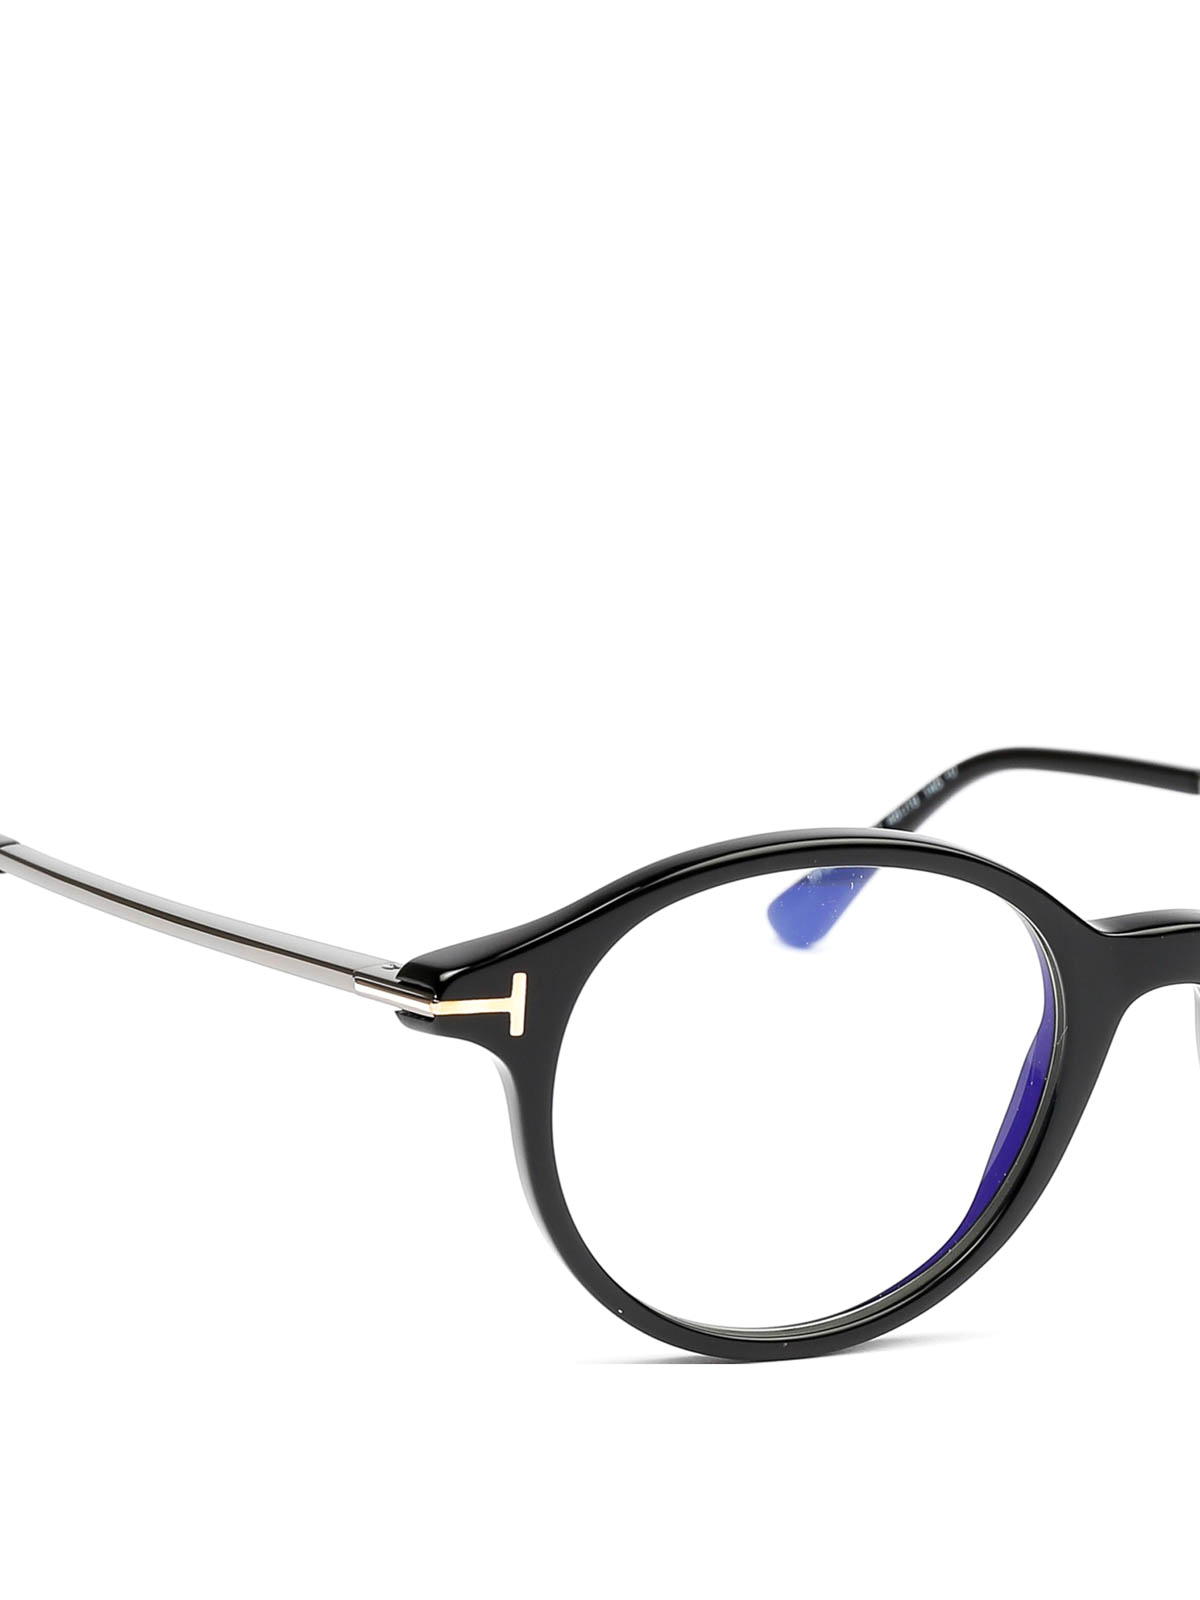 Glasses Tom Ford - Black oval eyeglasses - FT5554B001 